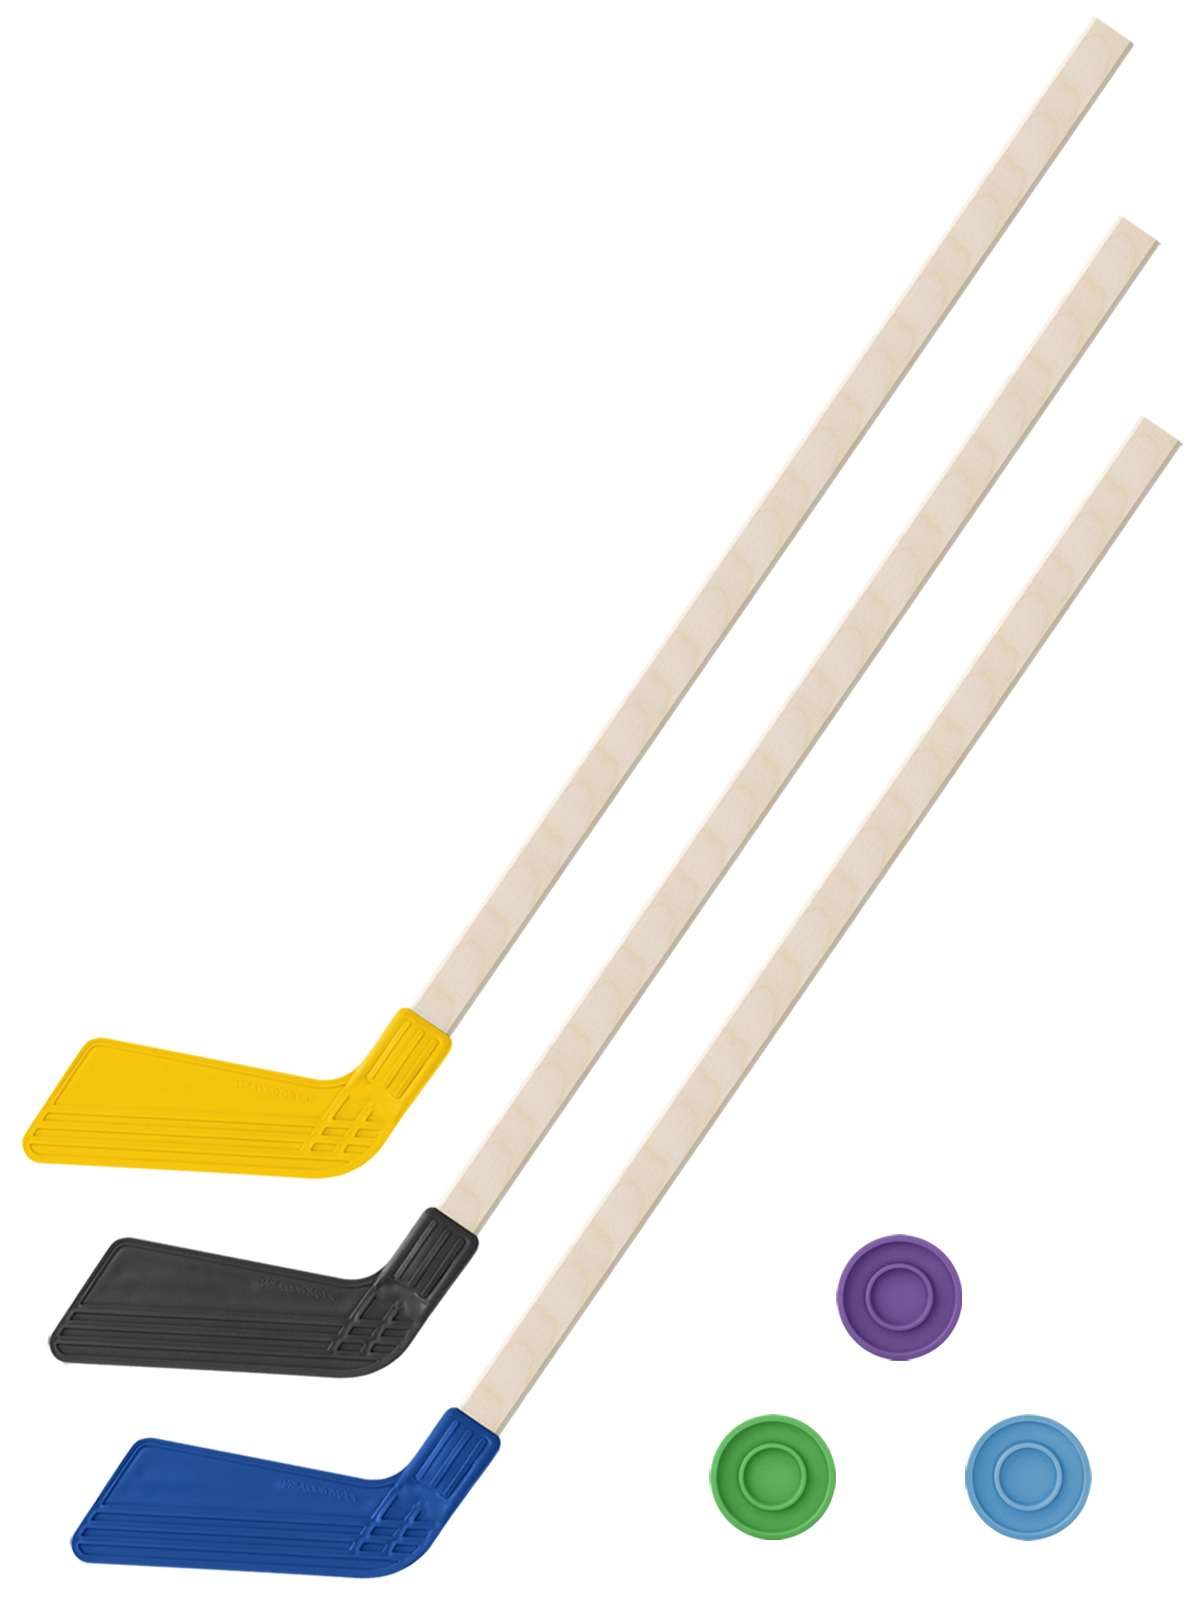 Детский хоккейный набор Задира-плюс 3 в 1 Клюшка хоккейная 80см (жёл,черн,син) + 3 шайбы клюшка флорбольная acito mini 35 orange 65 round прямой 3006 003